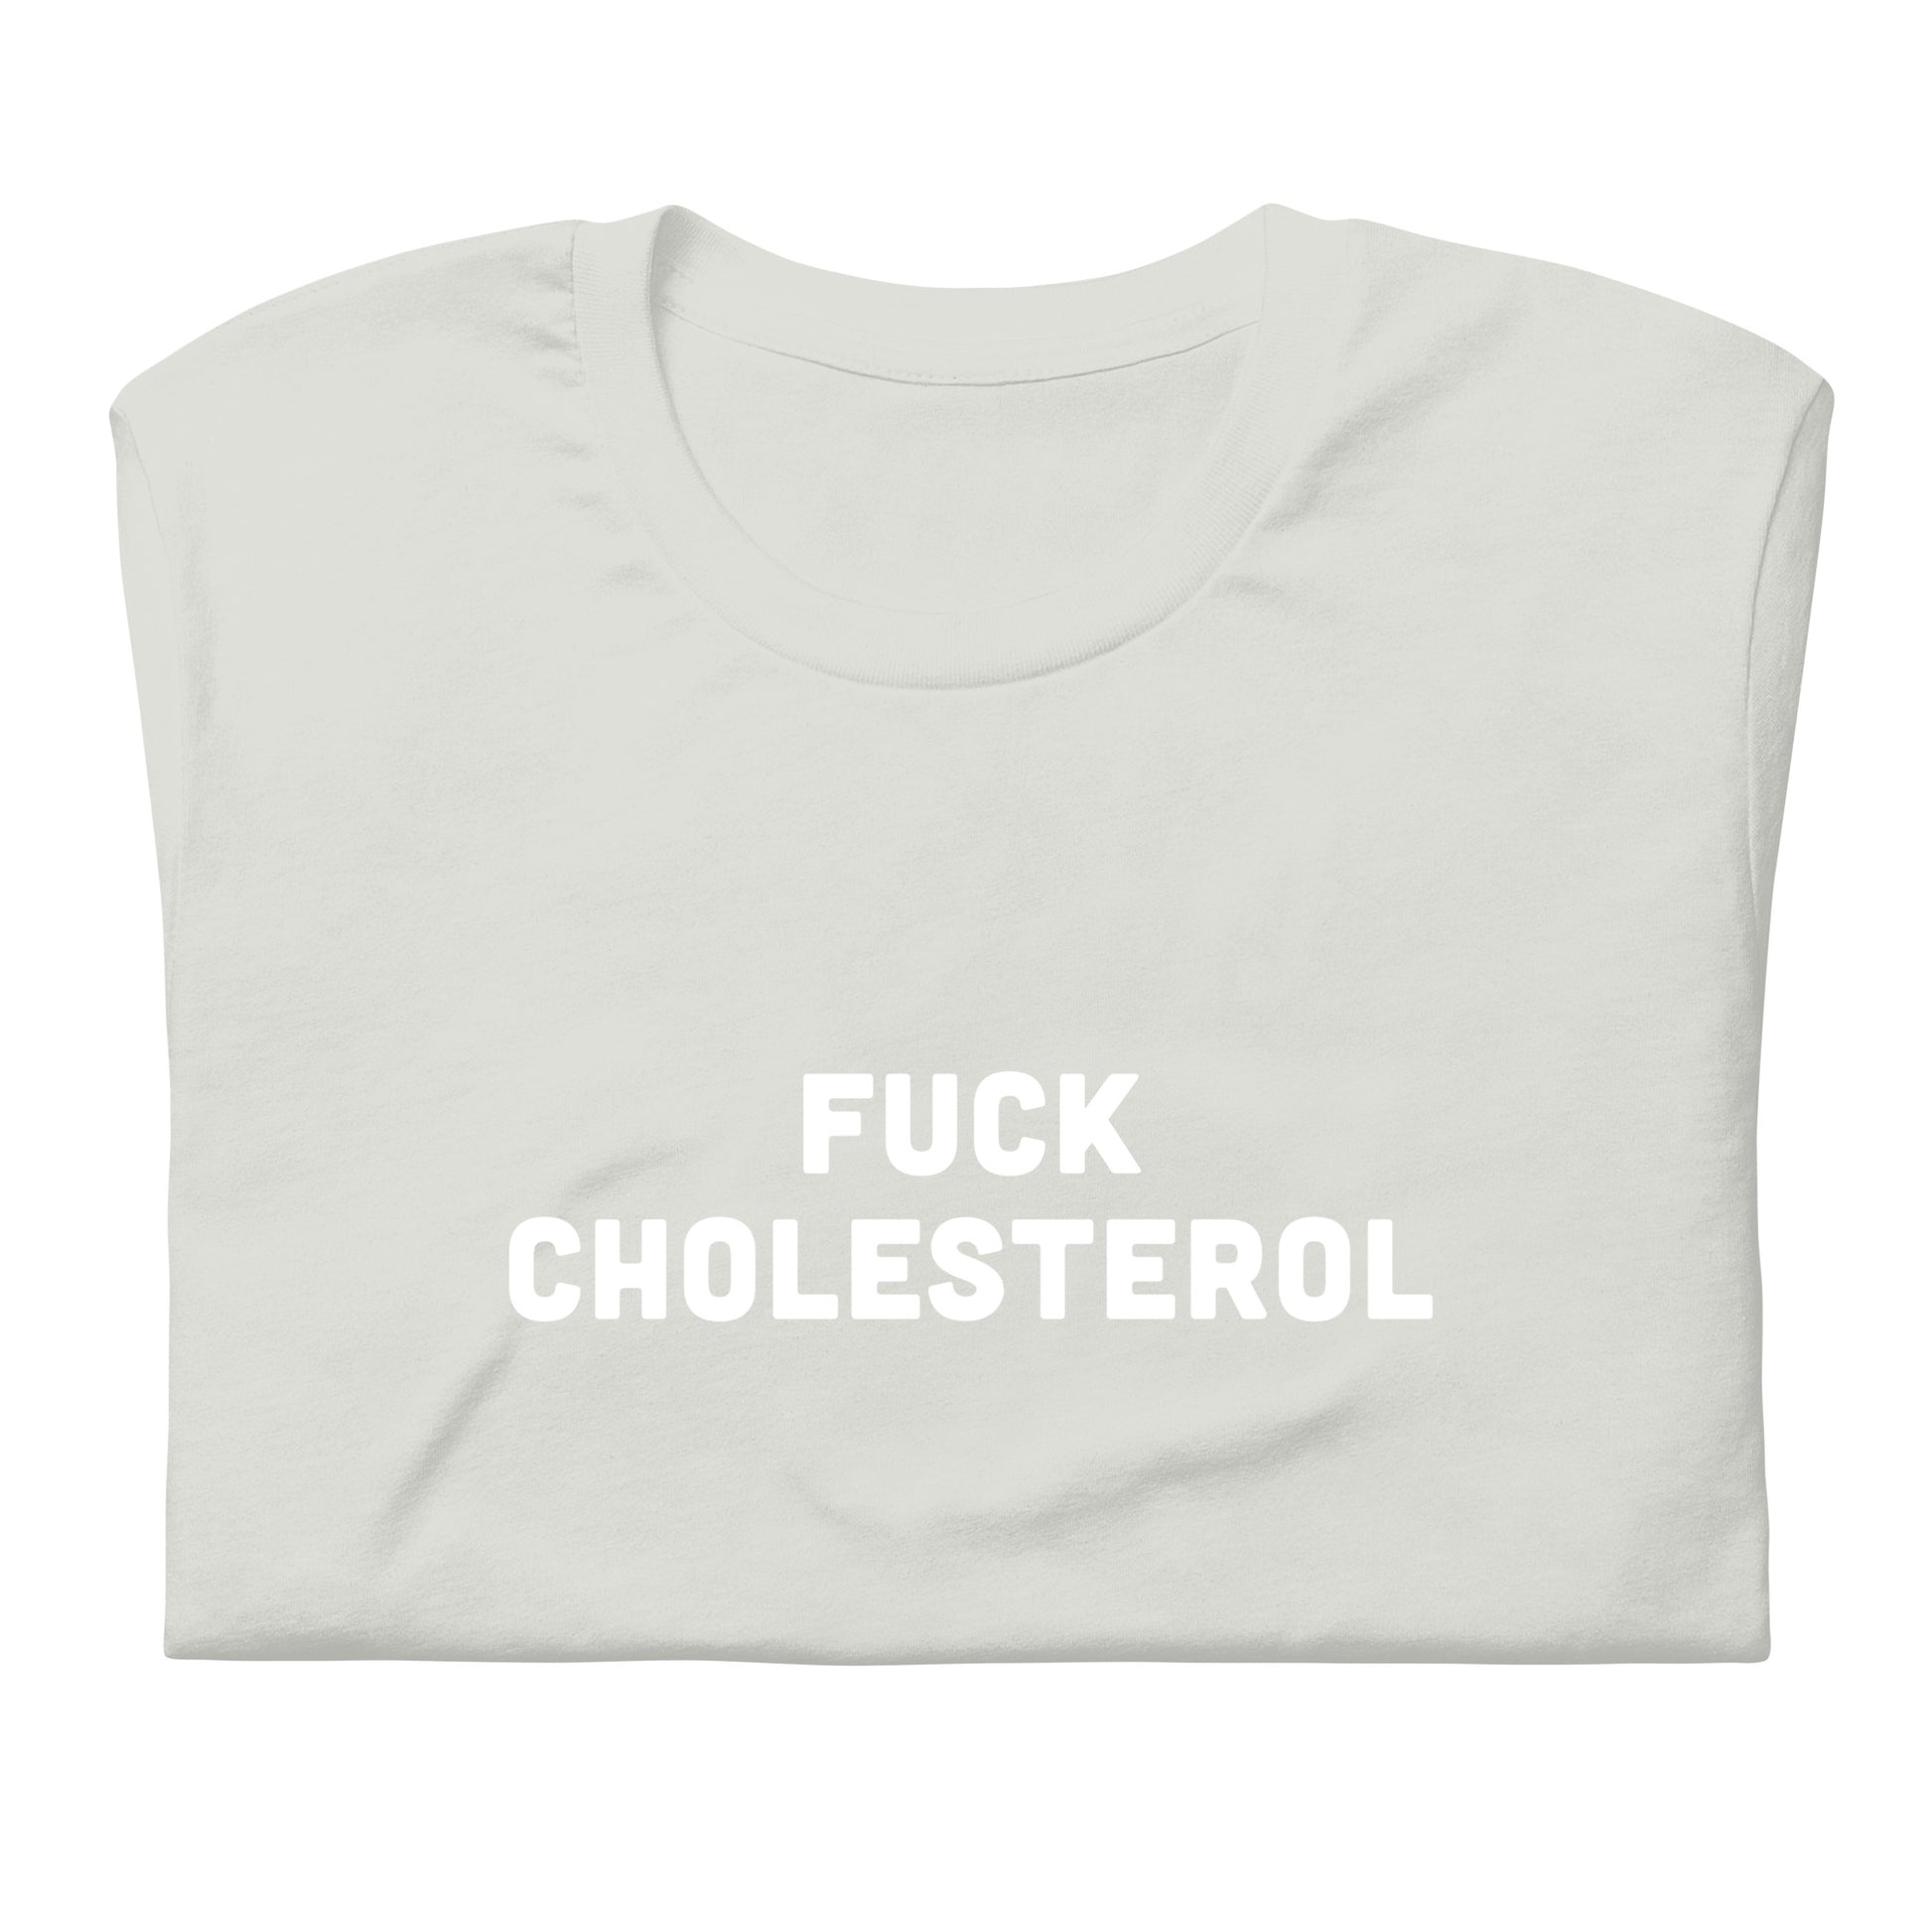 Fuck Cholesterol T-Shirt Size 2XL Color Asphalt